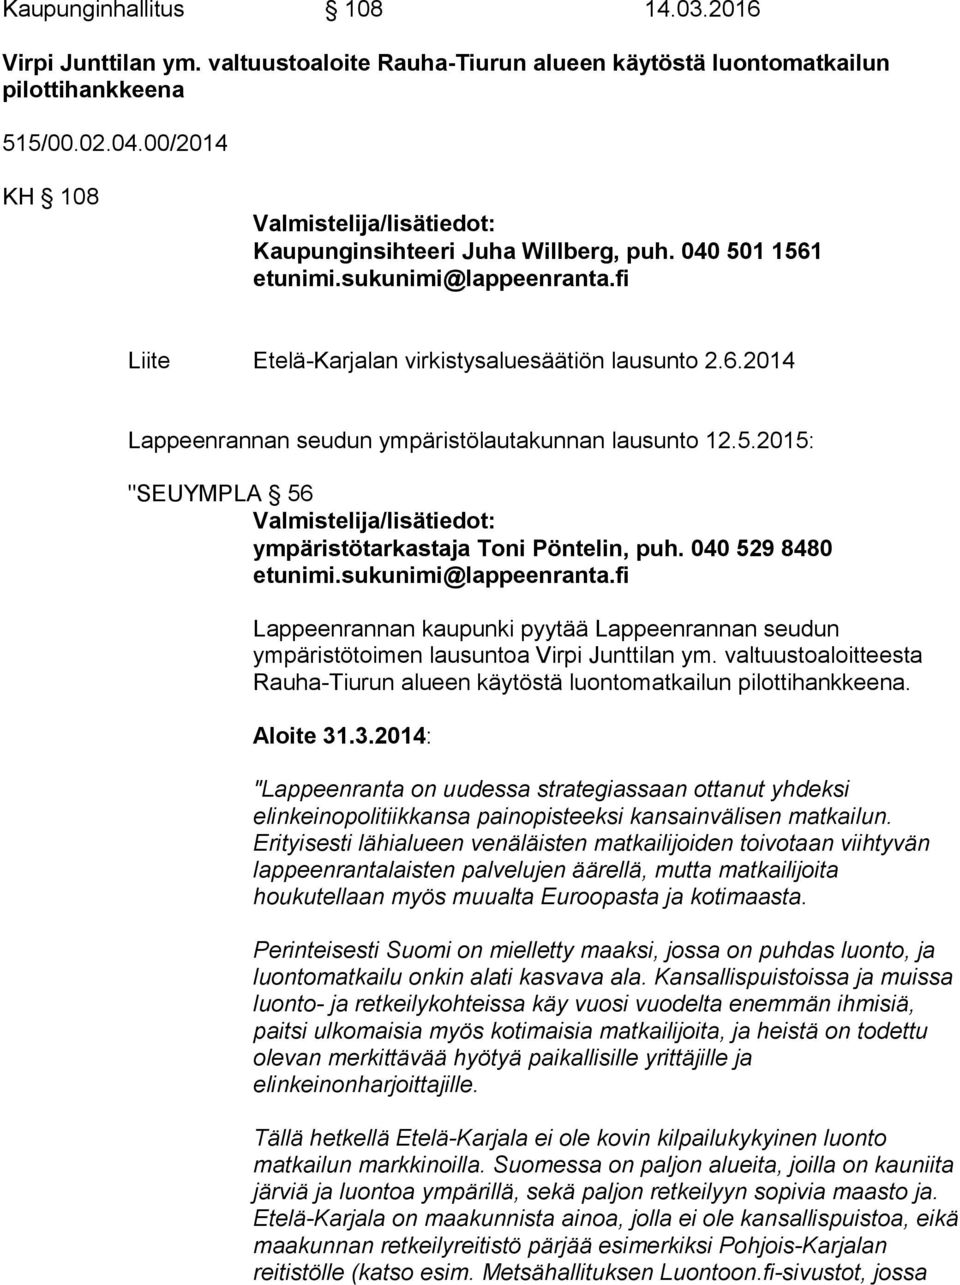 5.2015: "SEUYMPLA 56 Valmistelija/lisätiedot: ympäristötarkastaja Toni Pöntelin, puh. 040 529 8480 etunimi.sukunimi@lappeenranta.